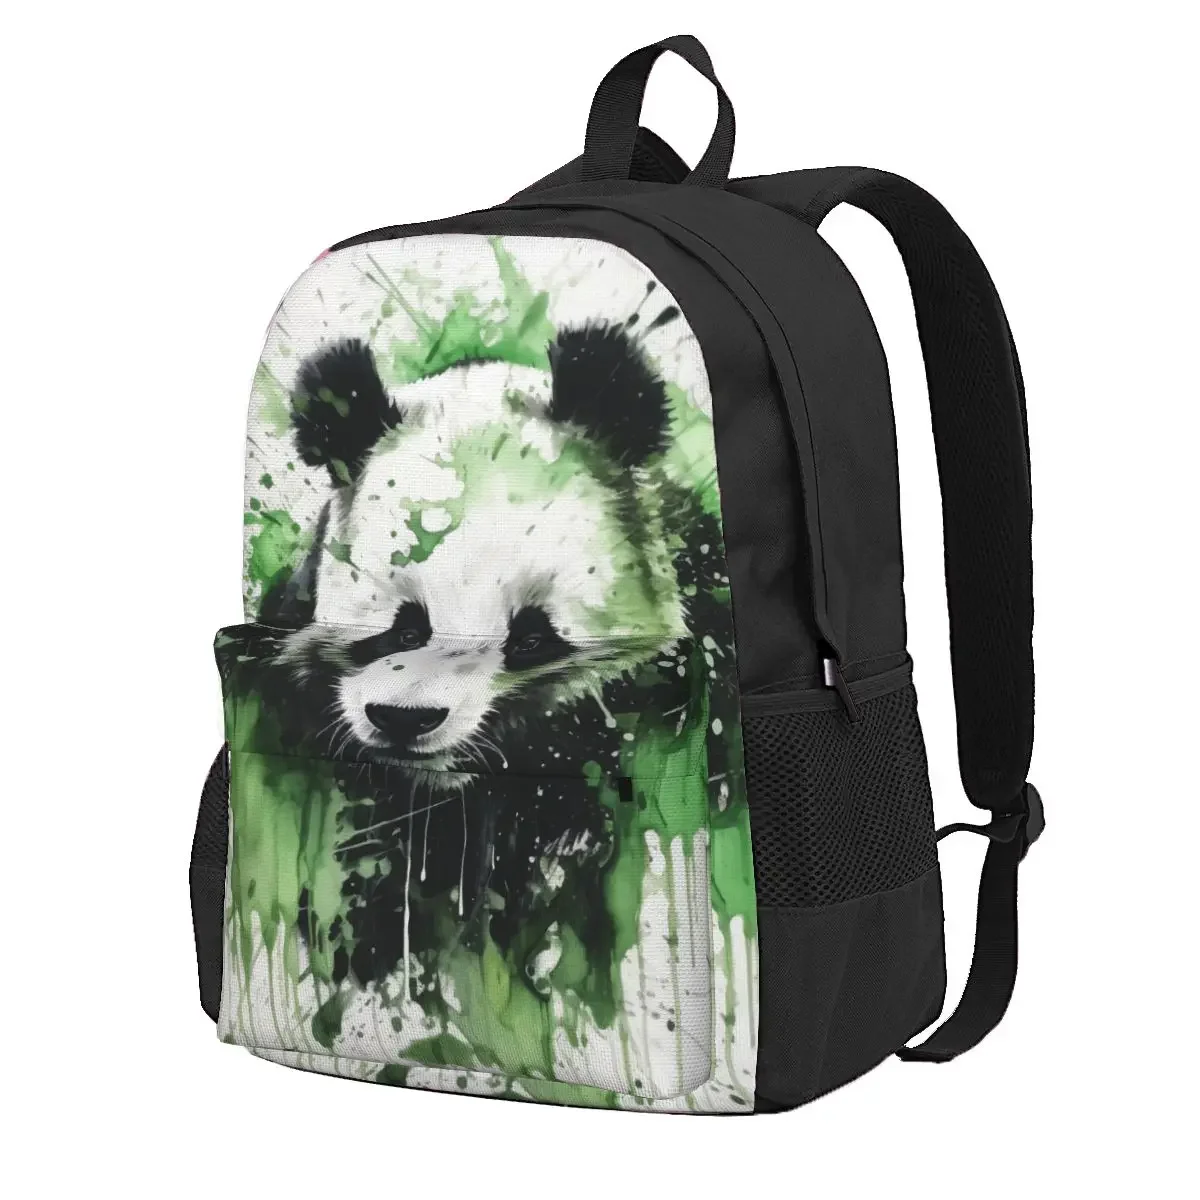 

Рюкзак с изображением панды, милые рюкзаки с чернильным рисунком, женские прочные школьные сумки для старших классов, красочный рюкзак